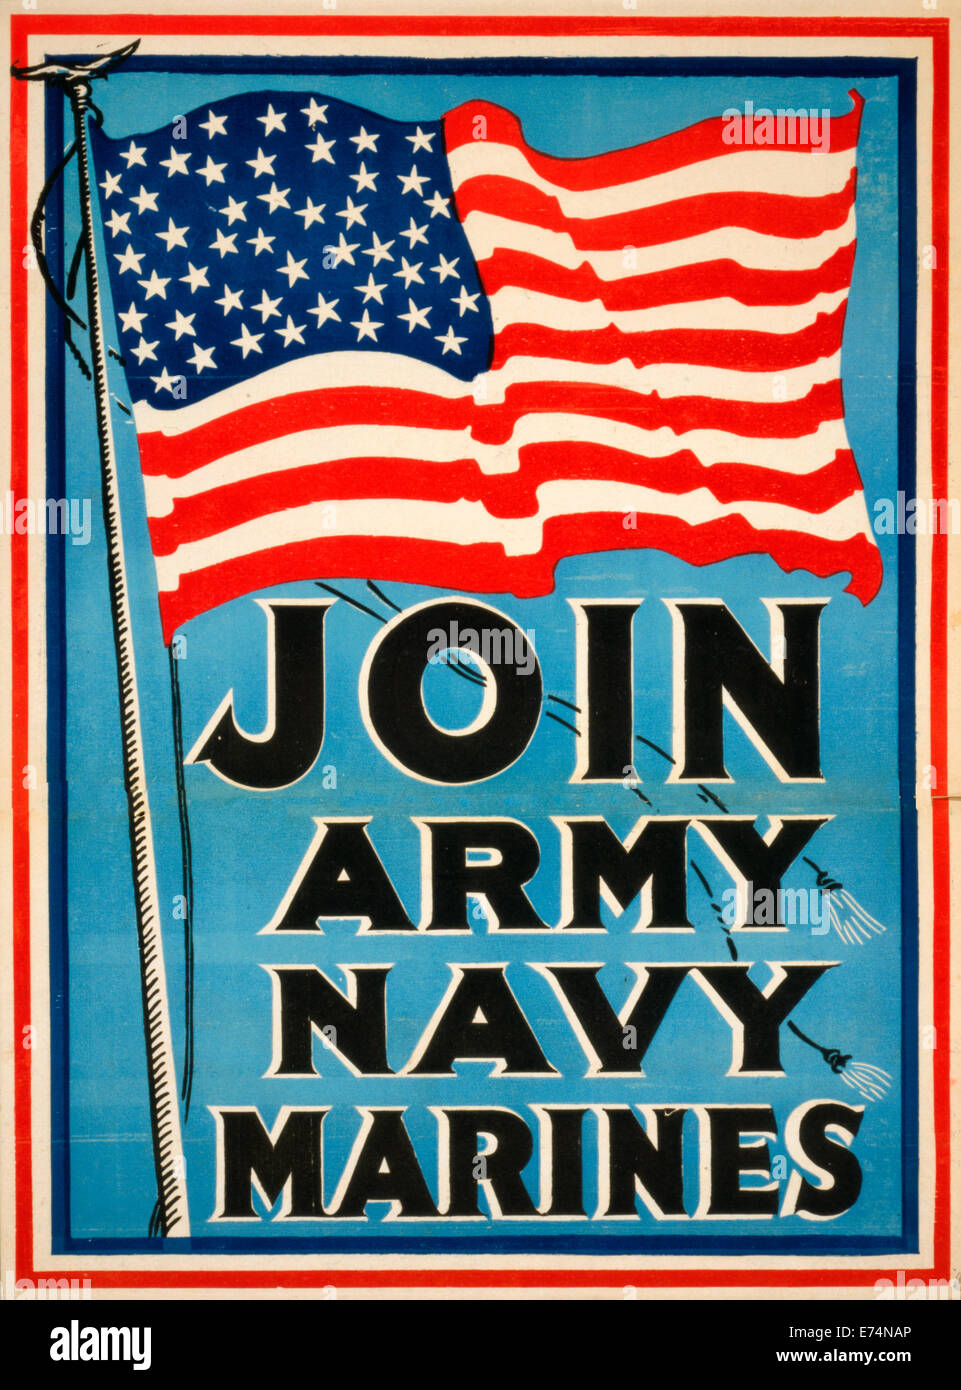 Únase a ejército de Marines Marina - Contratación de póster que muestra una gran bandera Americana. 1917 Foto de stock